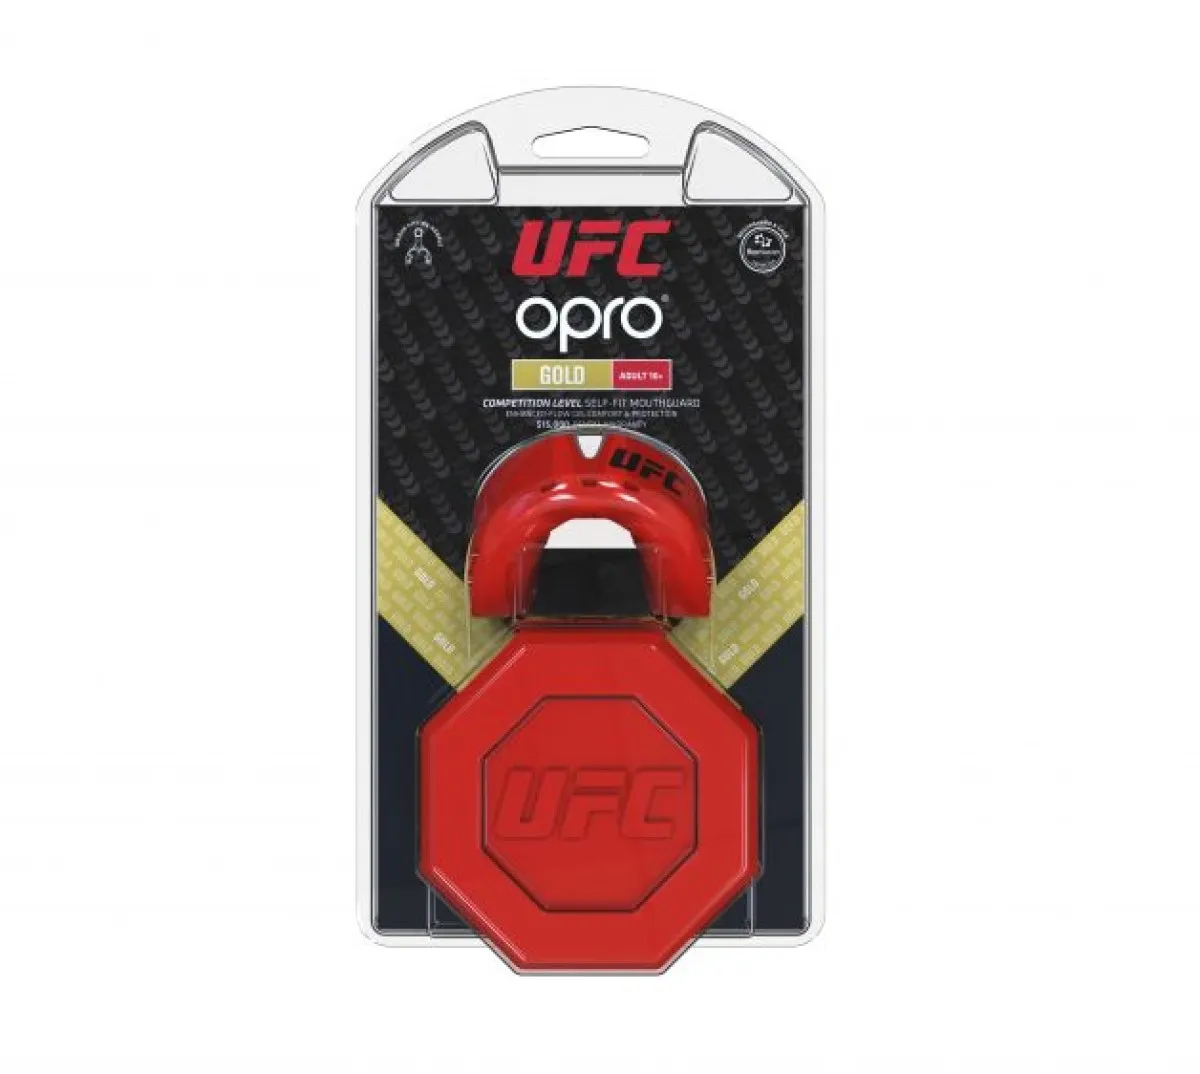 OPRO Protège-dents UFC Gold - rouge/argent, senior